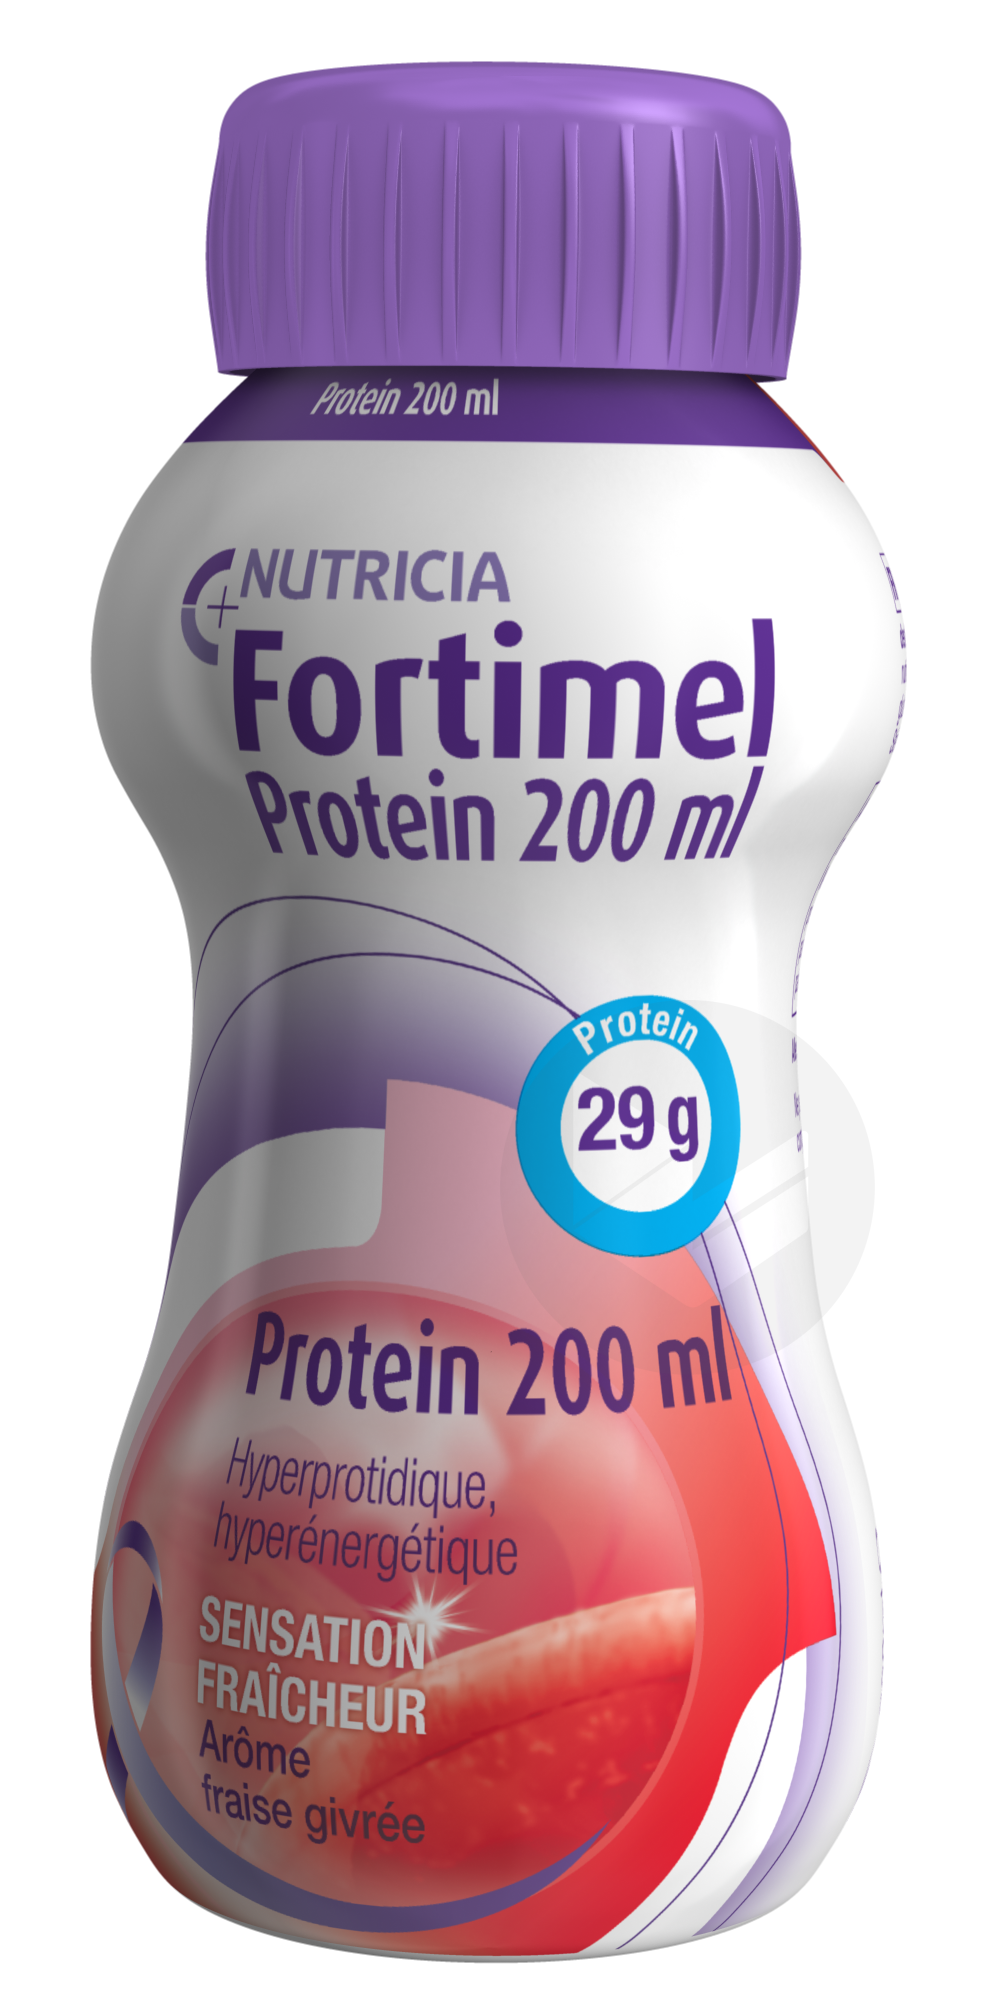 Fortimel Protein Sensation Fraîcheur Fraise Givrée 200 ml